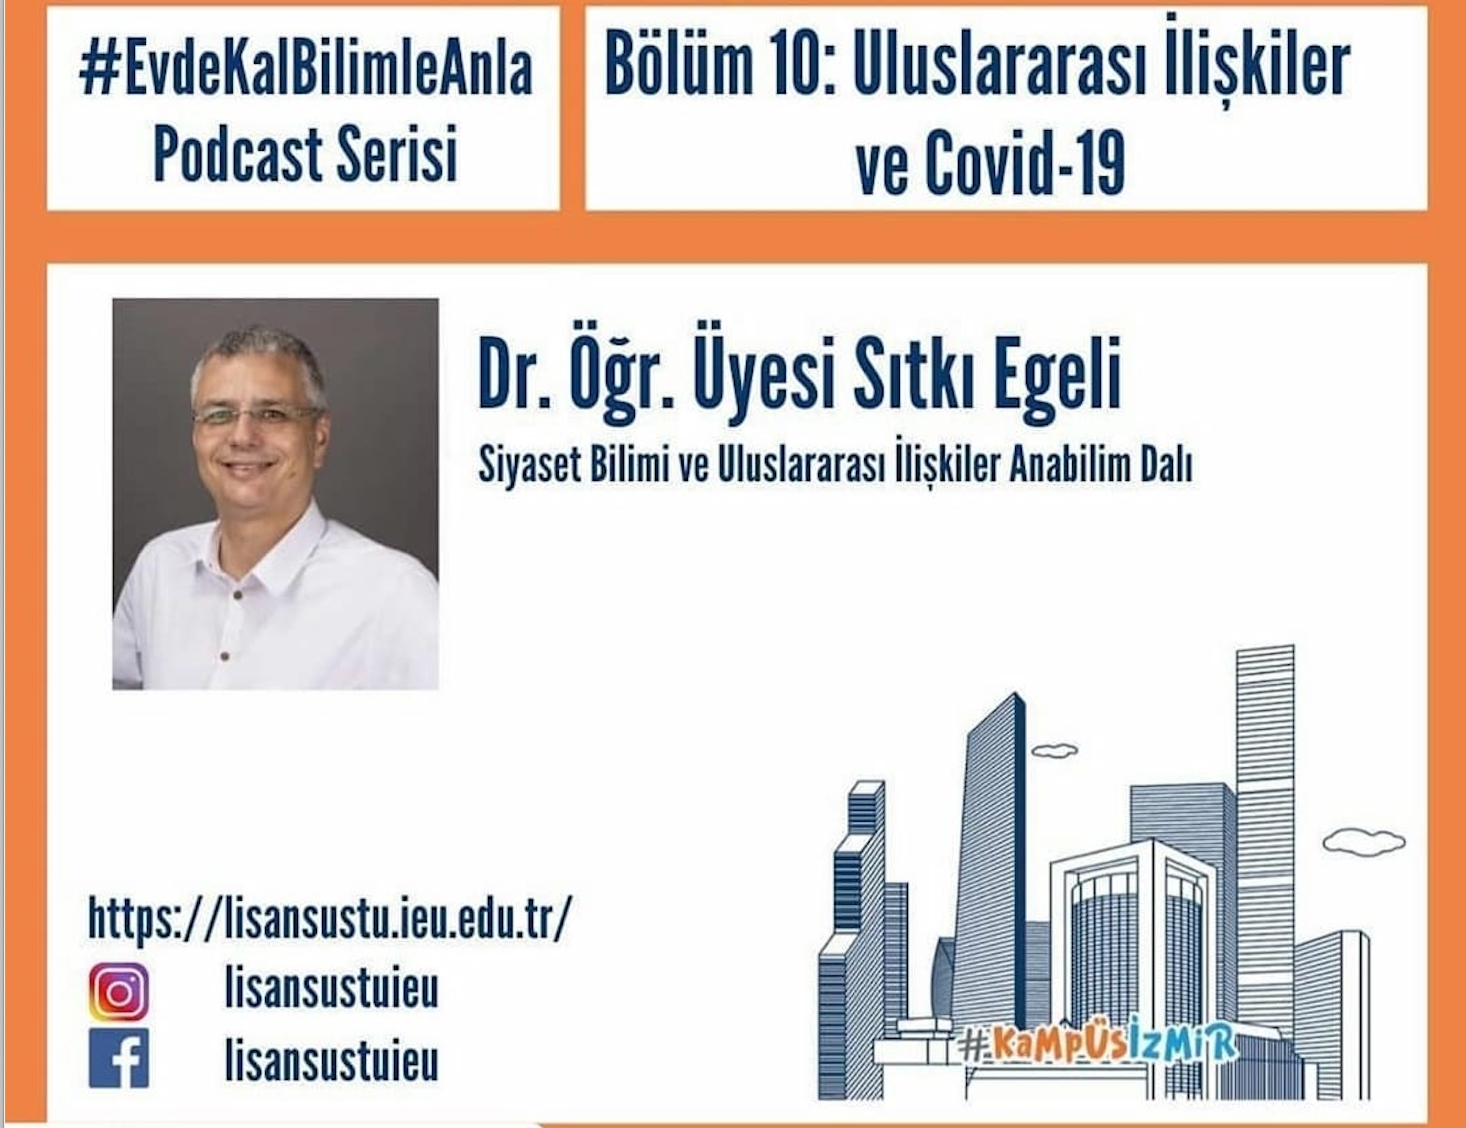 Sıtkı Egeli spoke about International Relations and Covid-19